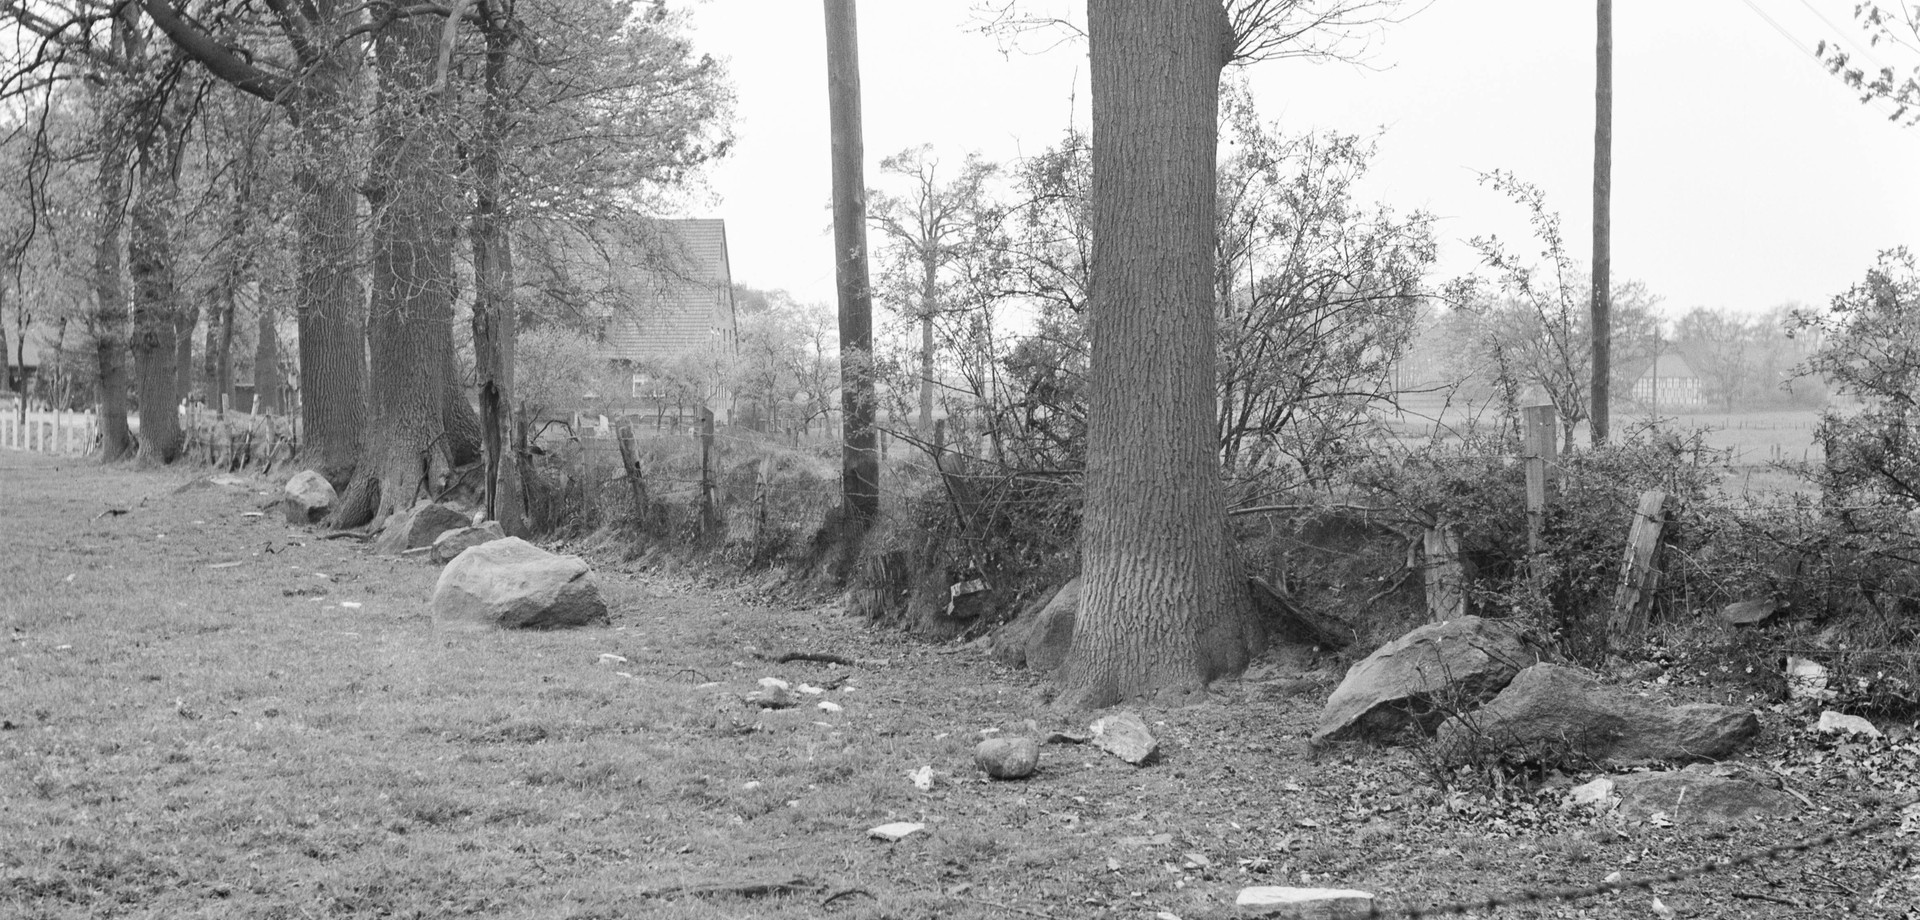 Fundlage der noch vorhandenen Findlinge im Jahr 1968 in der Weide an der Böschung (Foto: LWL-Archäologie/O. Rochna)